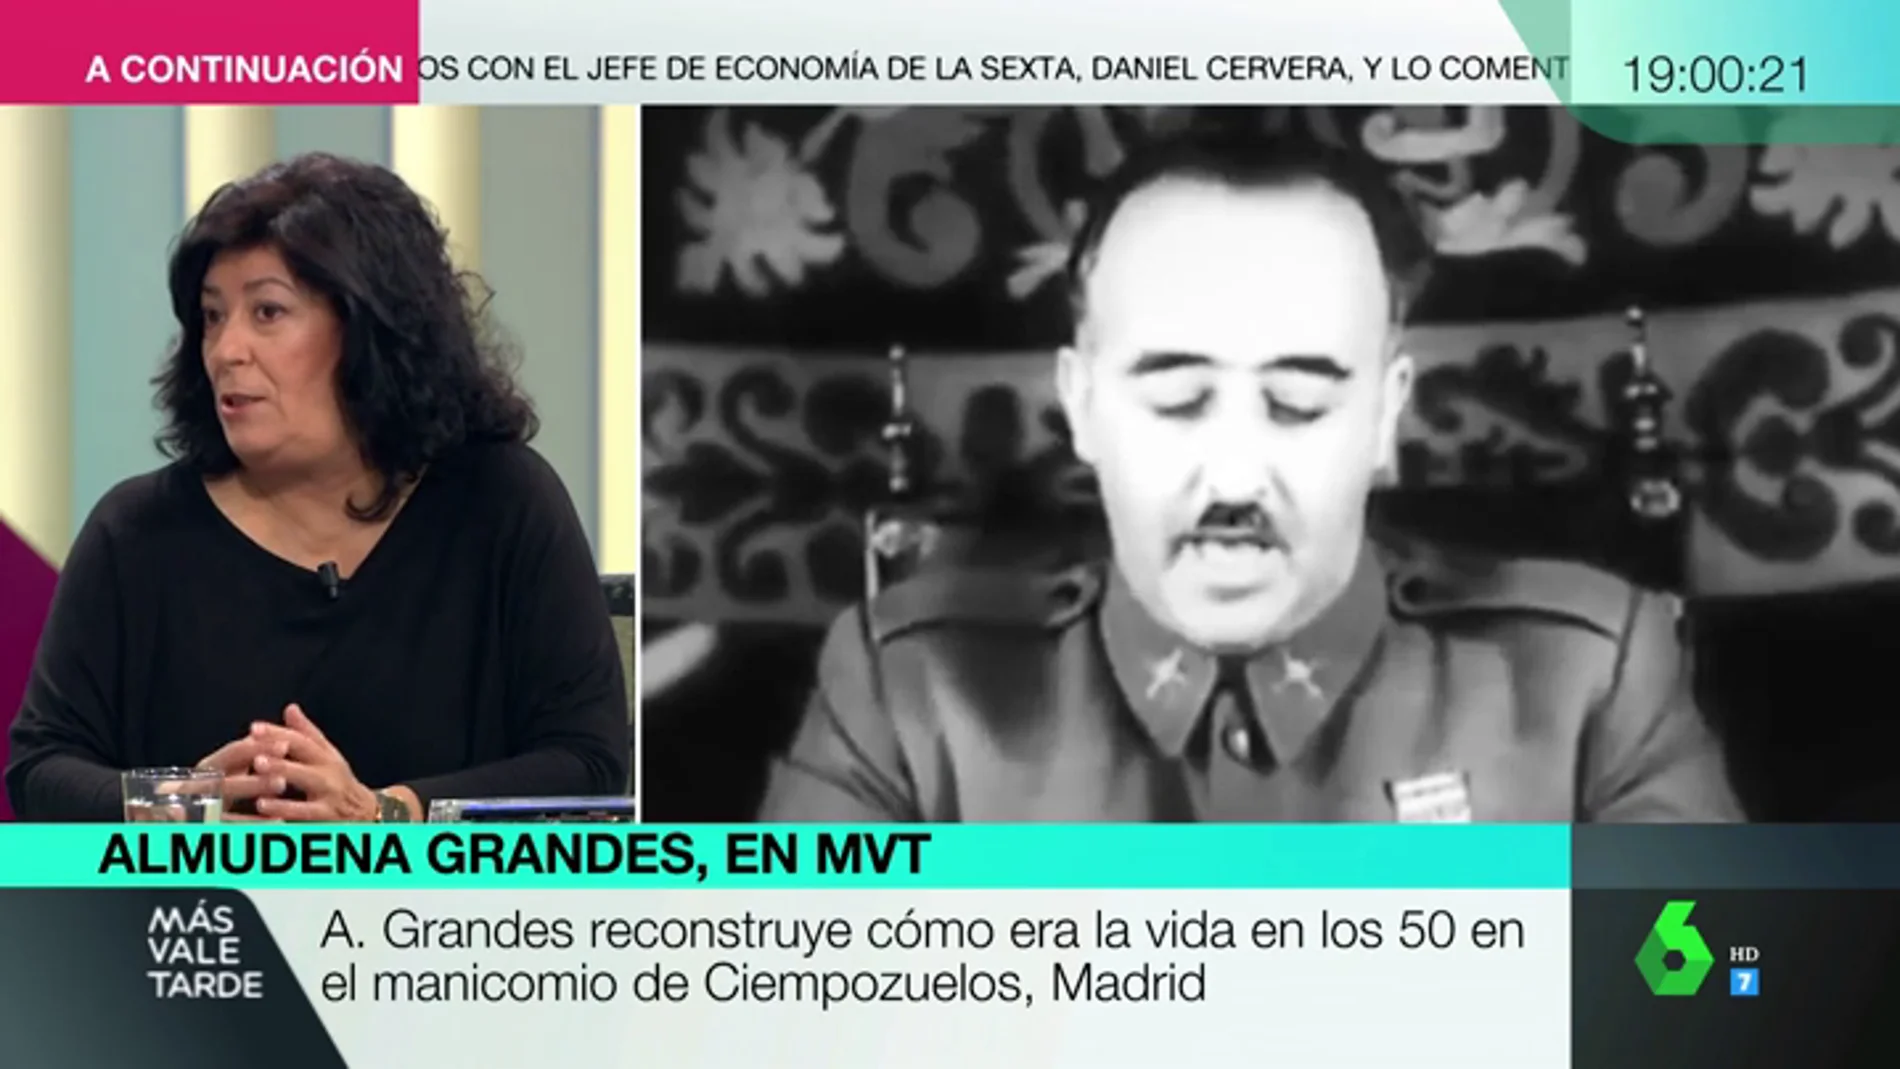 Almudena Grandes: "La democracia tiene una deuda con los exiliados republicanos que en vez de nacionalizarse siguieron siendo españoles hasta el final"